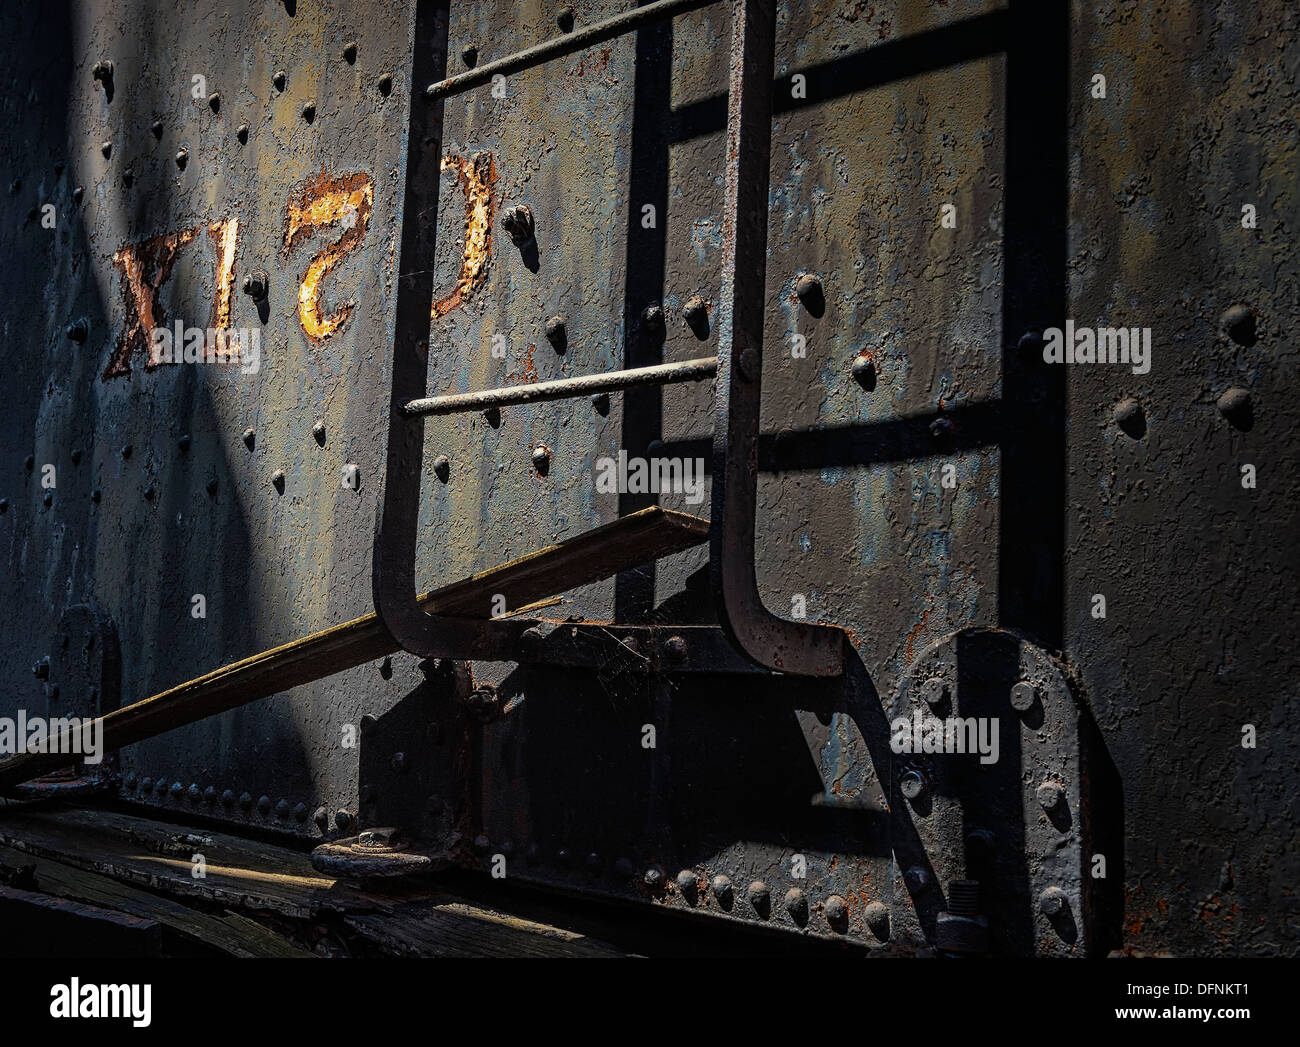 Un editoriale dettaglio immagine di una gara di carbone per una locomotiva a vapore. Foto Stock